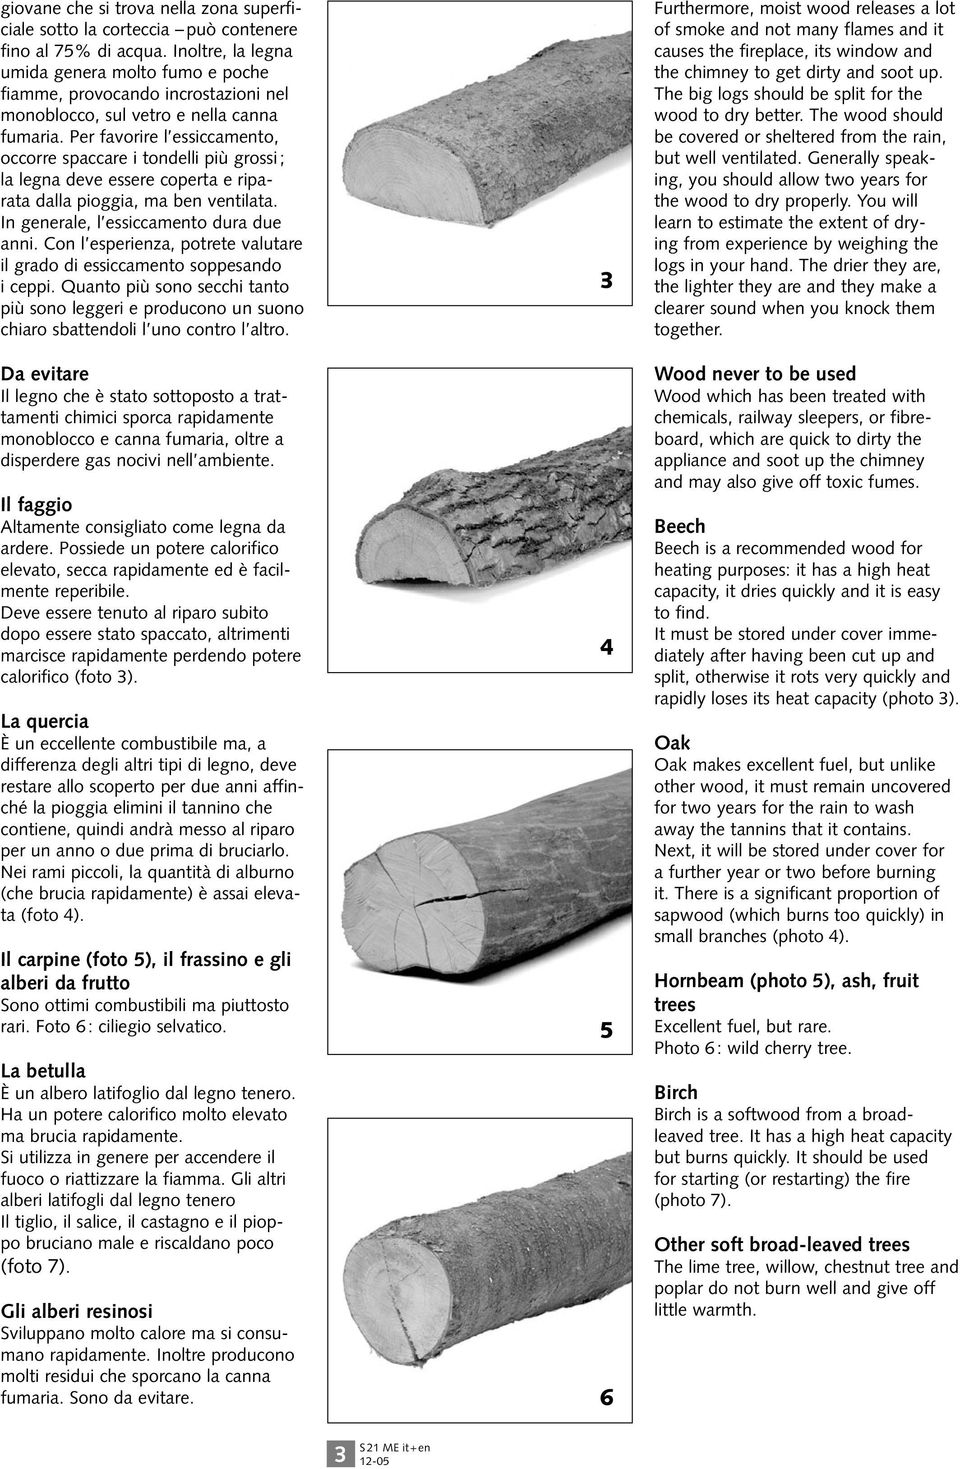 Per favorire l essiccamento, occorre spaccare i tondelli più grossi ; la legna deve essere coperta e riparata dalla pioggia, ma ben ventilata. In generale, l essiccamento dura due anni.